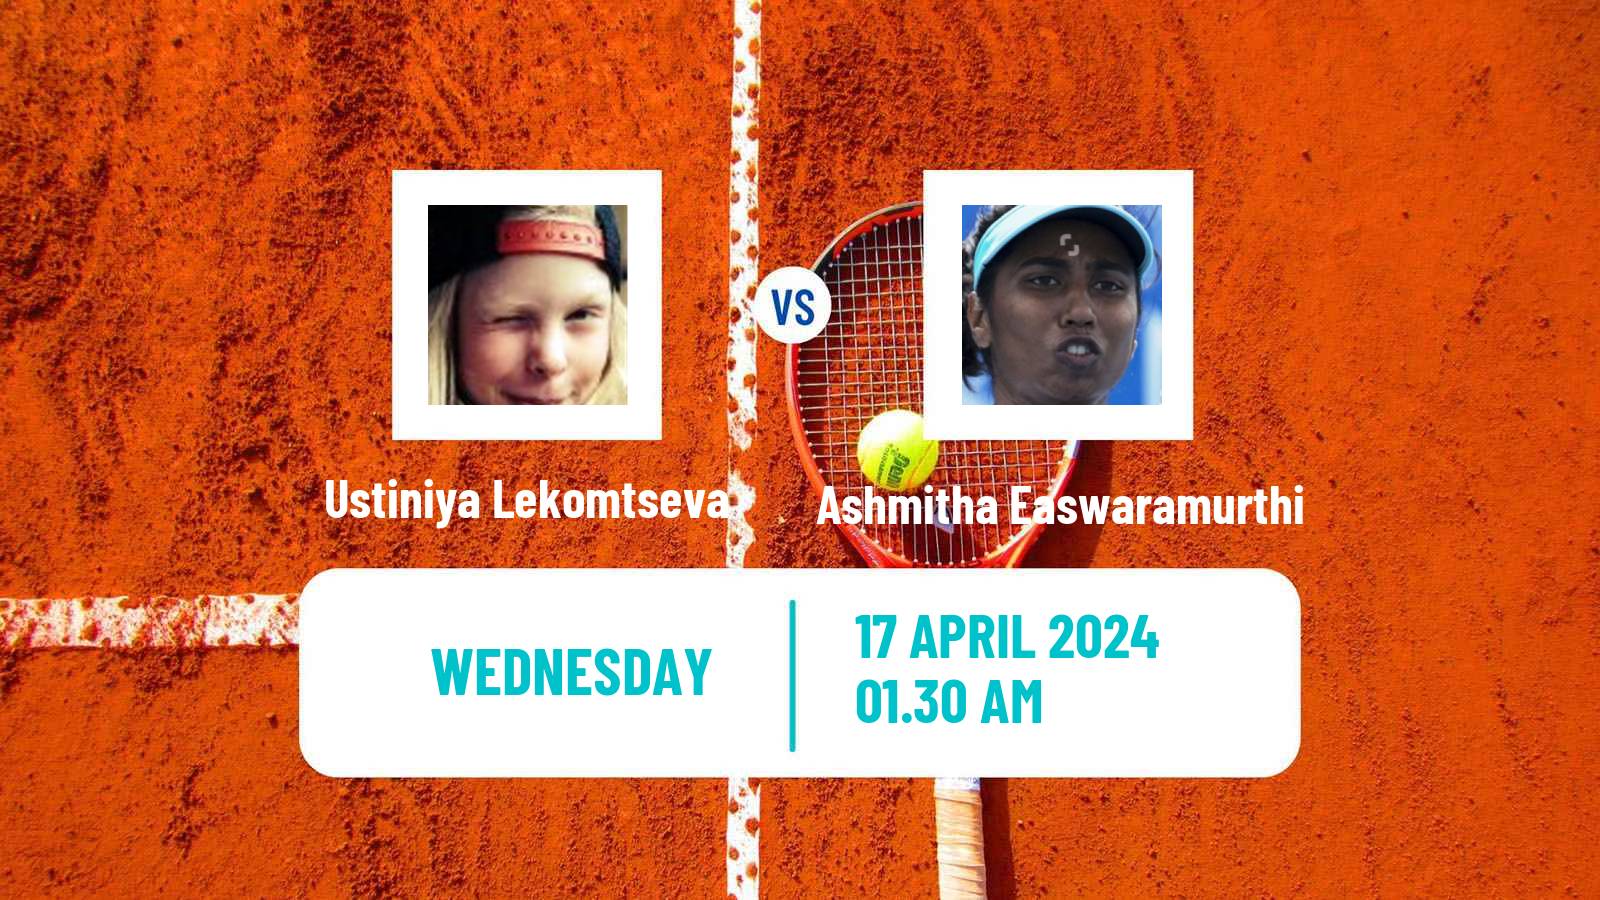 Tennis ITF W15 Shymkent Women Ustiniya Lekomtseva - Ashmitha Easwaramurthi